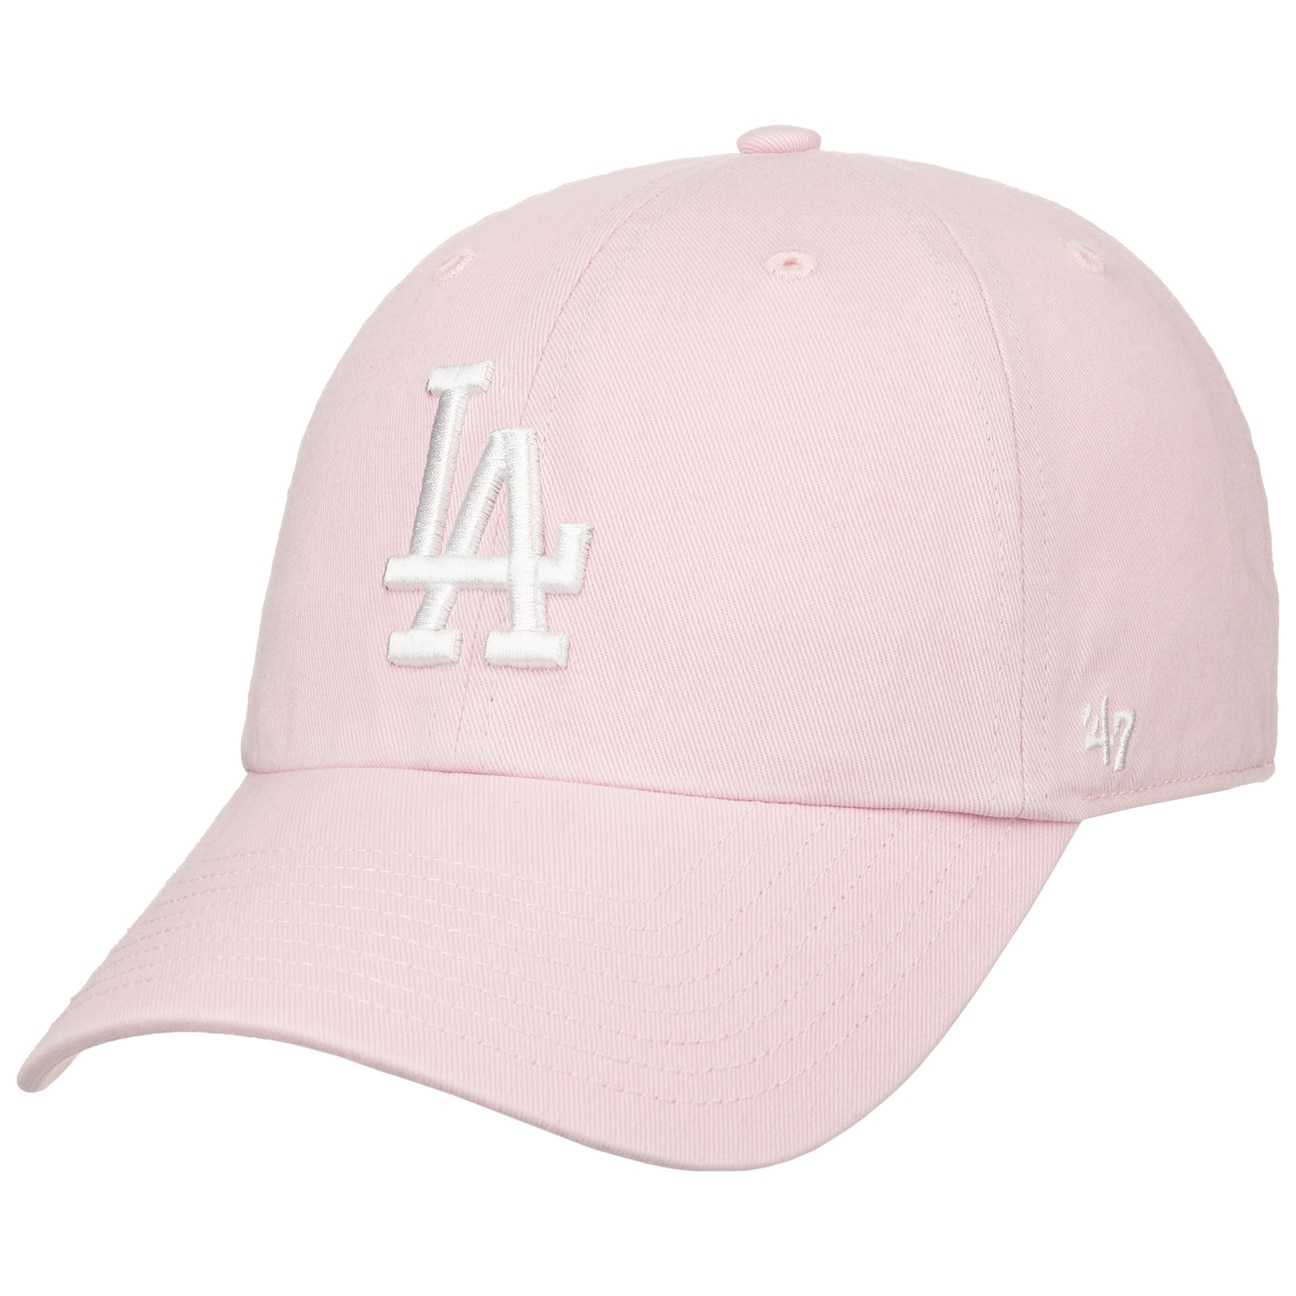 LA Dodgers MLB Clean Up Cap by 47 Brand von 47 Brand